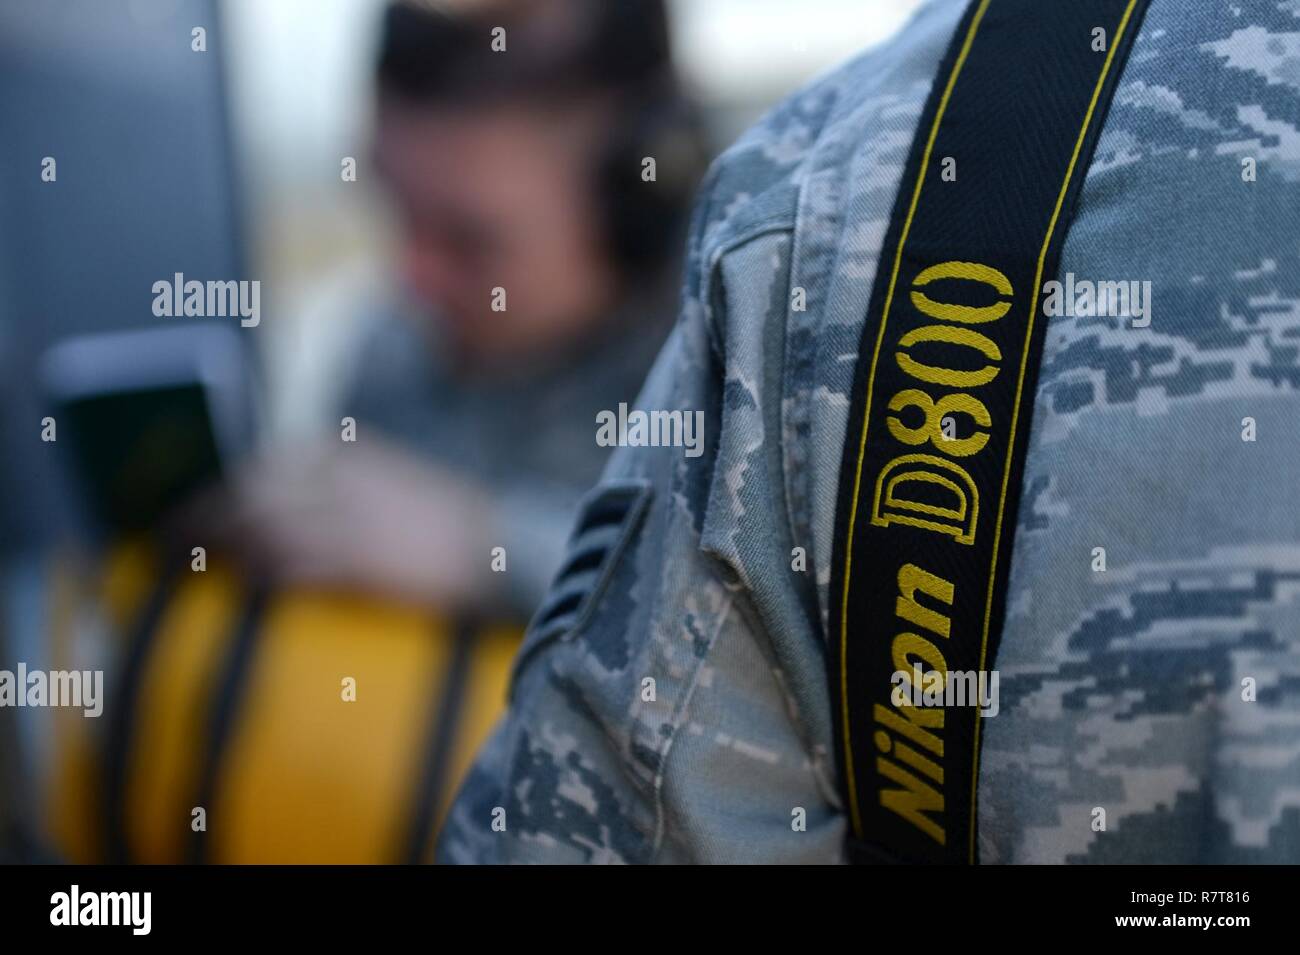 La Fuerza Aérea de los EE.UU Aviador Senior Kelsey Tucker, 20th Fighter Wing (FW) Asuntos Públicos (PA) fotoperiodista journeyman, obtiene información de subtítulos a partir de una foto sujeta a la base de la fuerza aérea Shaw, S.C., 21 de marzo de 2017. Los fotoperiodistas asignado a la 20ª FW PA oficina capturar fotos de operaciones de instalación, exhibiendo equipo aviadores Shaw's, destacando la misión básica del ala de supresión de la defensa antiaérea enemiga. Foto de stock